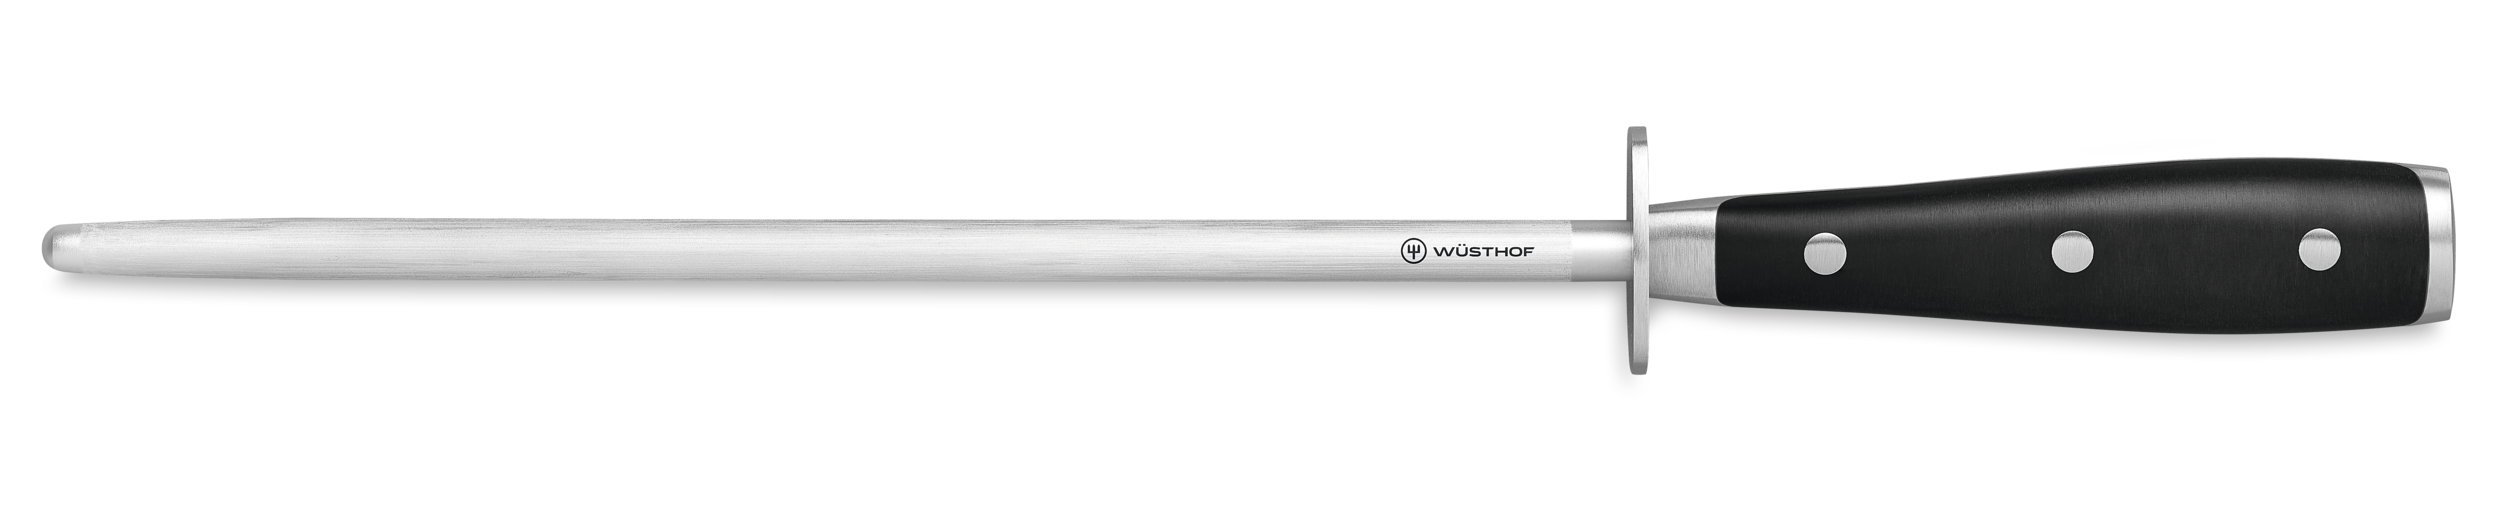 Wusthof 10 Deluxe Honing Steel